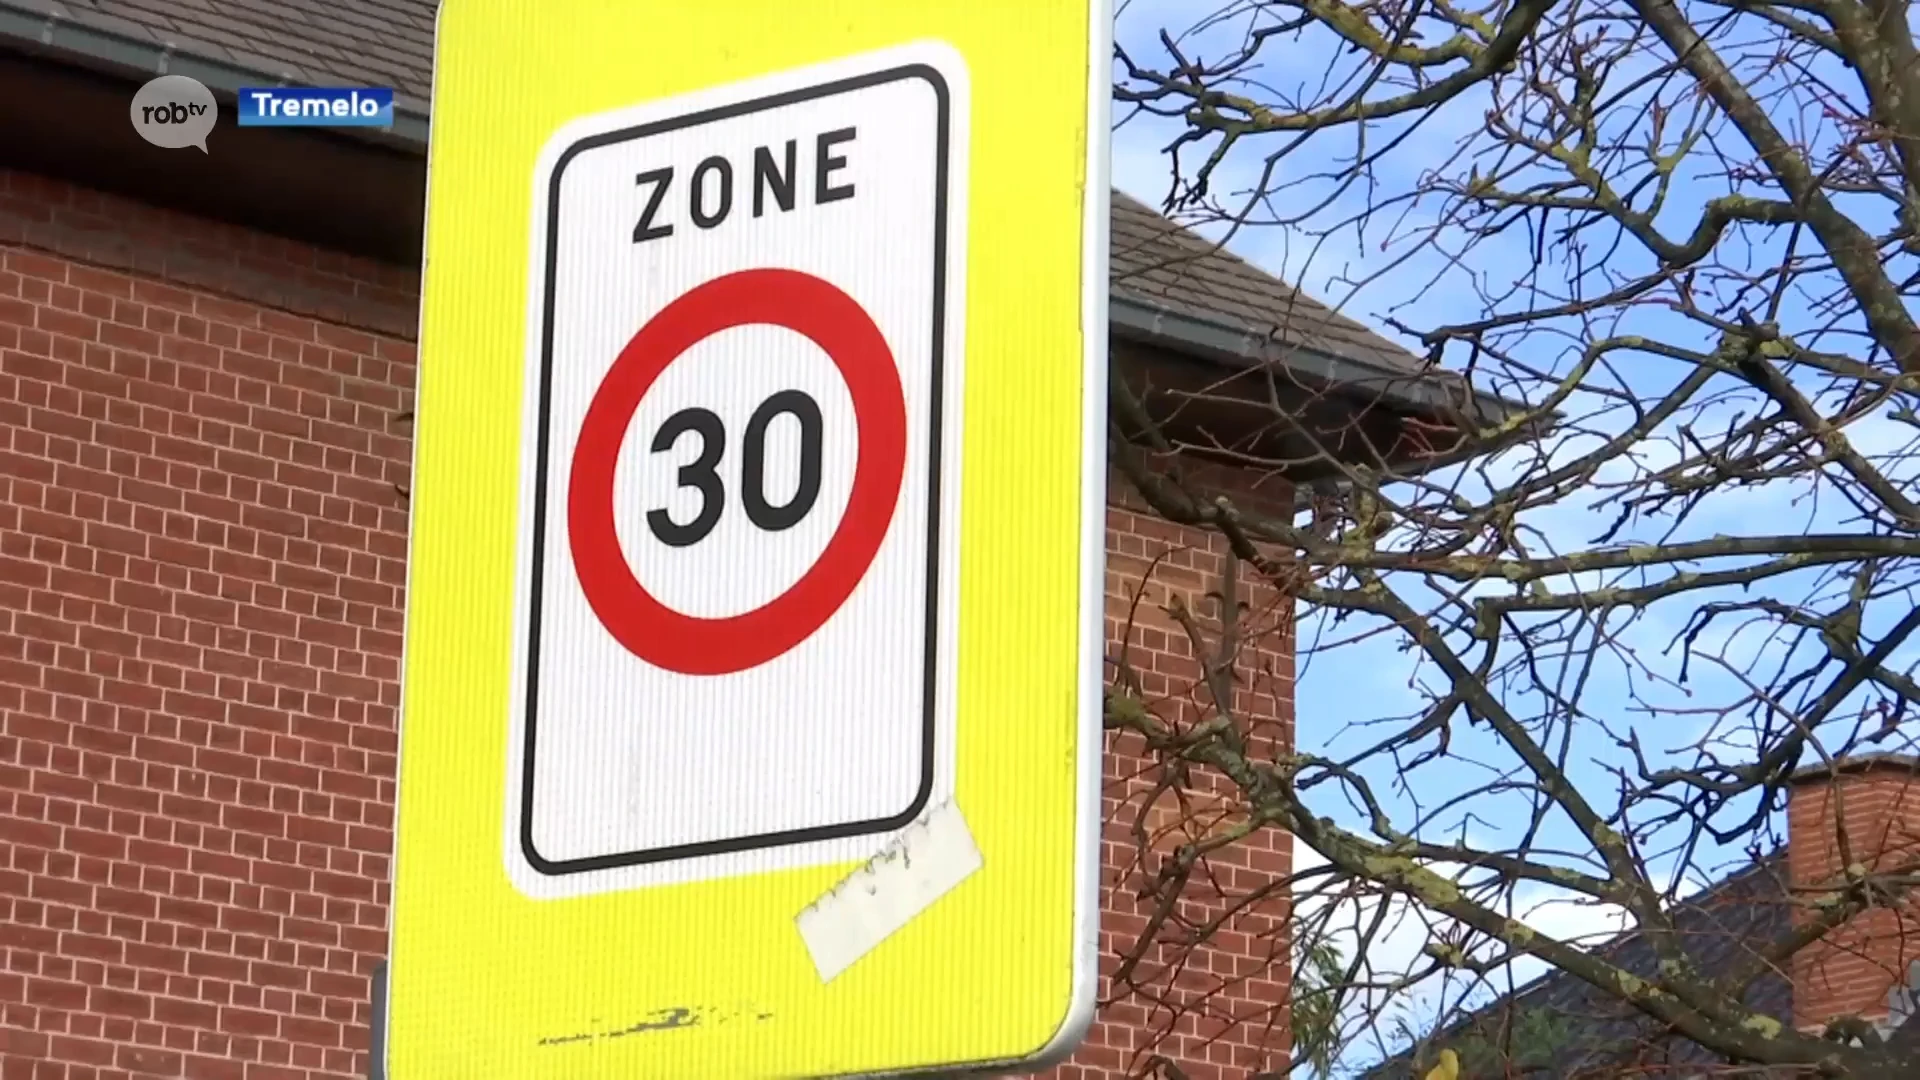 5 trajectcontroles op komst in Tremelo: "Verkeersveiliger, vooral voor zwakke weggebruikers"